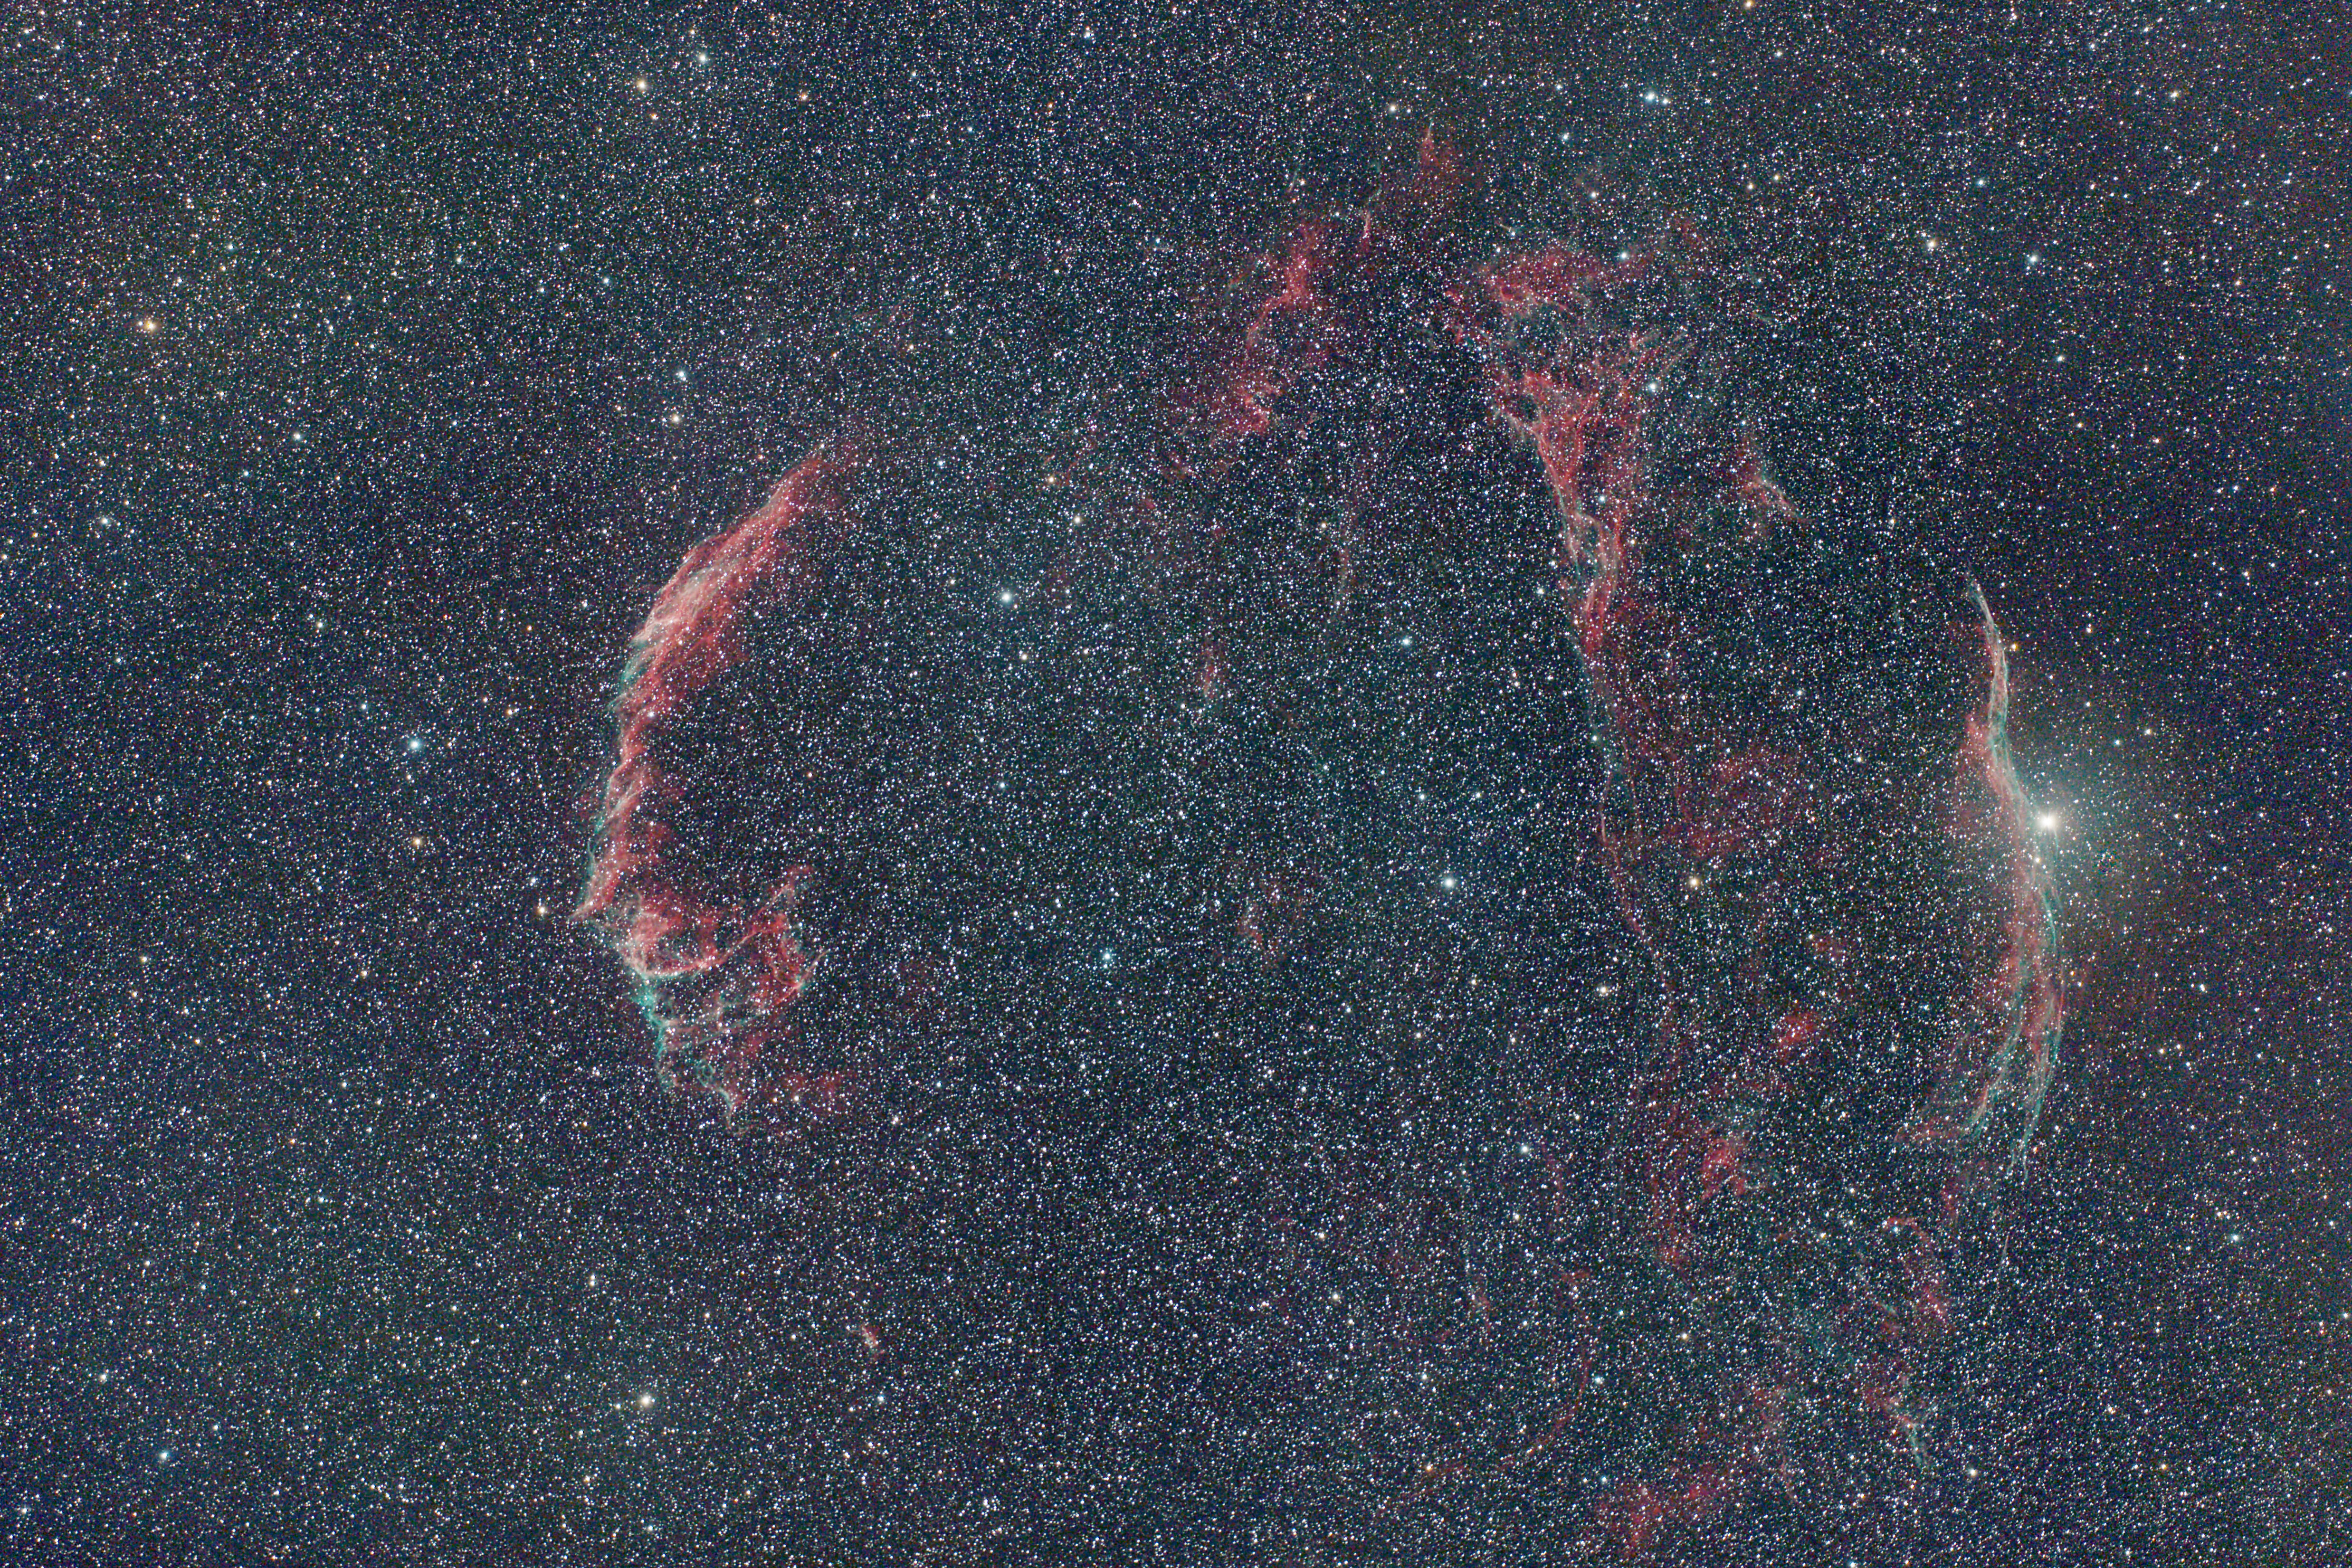 Veil Nebula 105-650 7704 D1 5DII 24x3mins ISO1600 multiple framing C.jpg